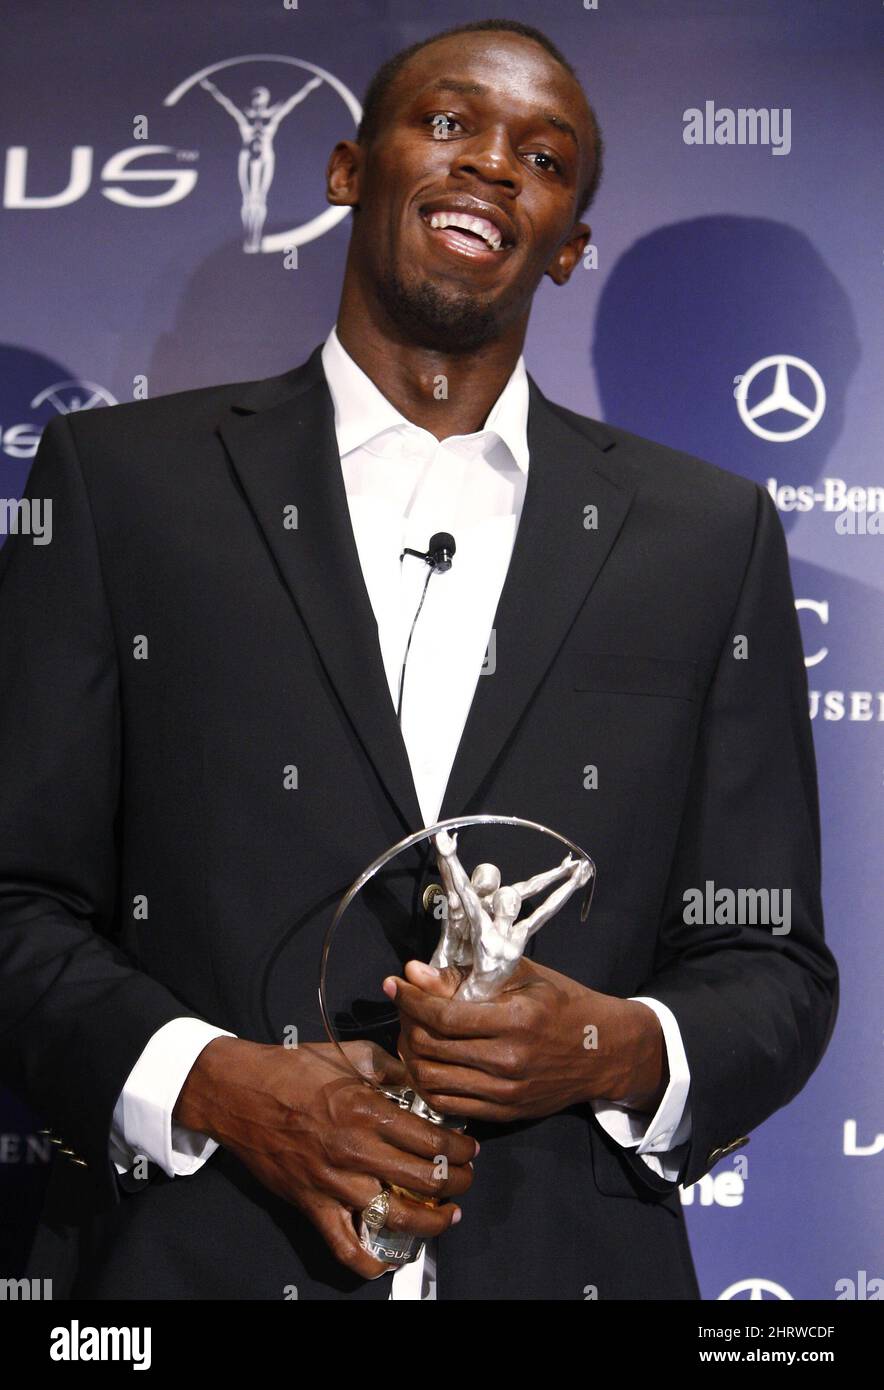 Il medaglia d'oro olimpico Usain Bolt, della Giamaica, sorride a Toronto dopo aver vinto il premio 2009 Laureus World Sportsman of the Year Award mercoledì 10 giugno 2009. (AP Photo/The Canadian Press, Nathan Denette) Foto Stock